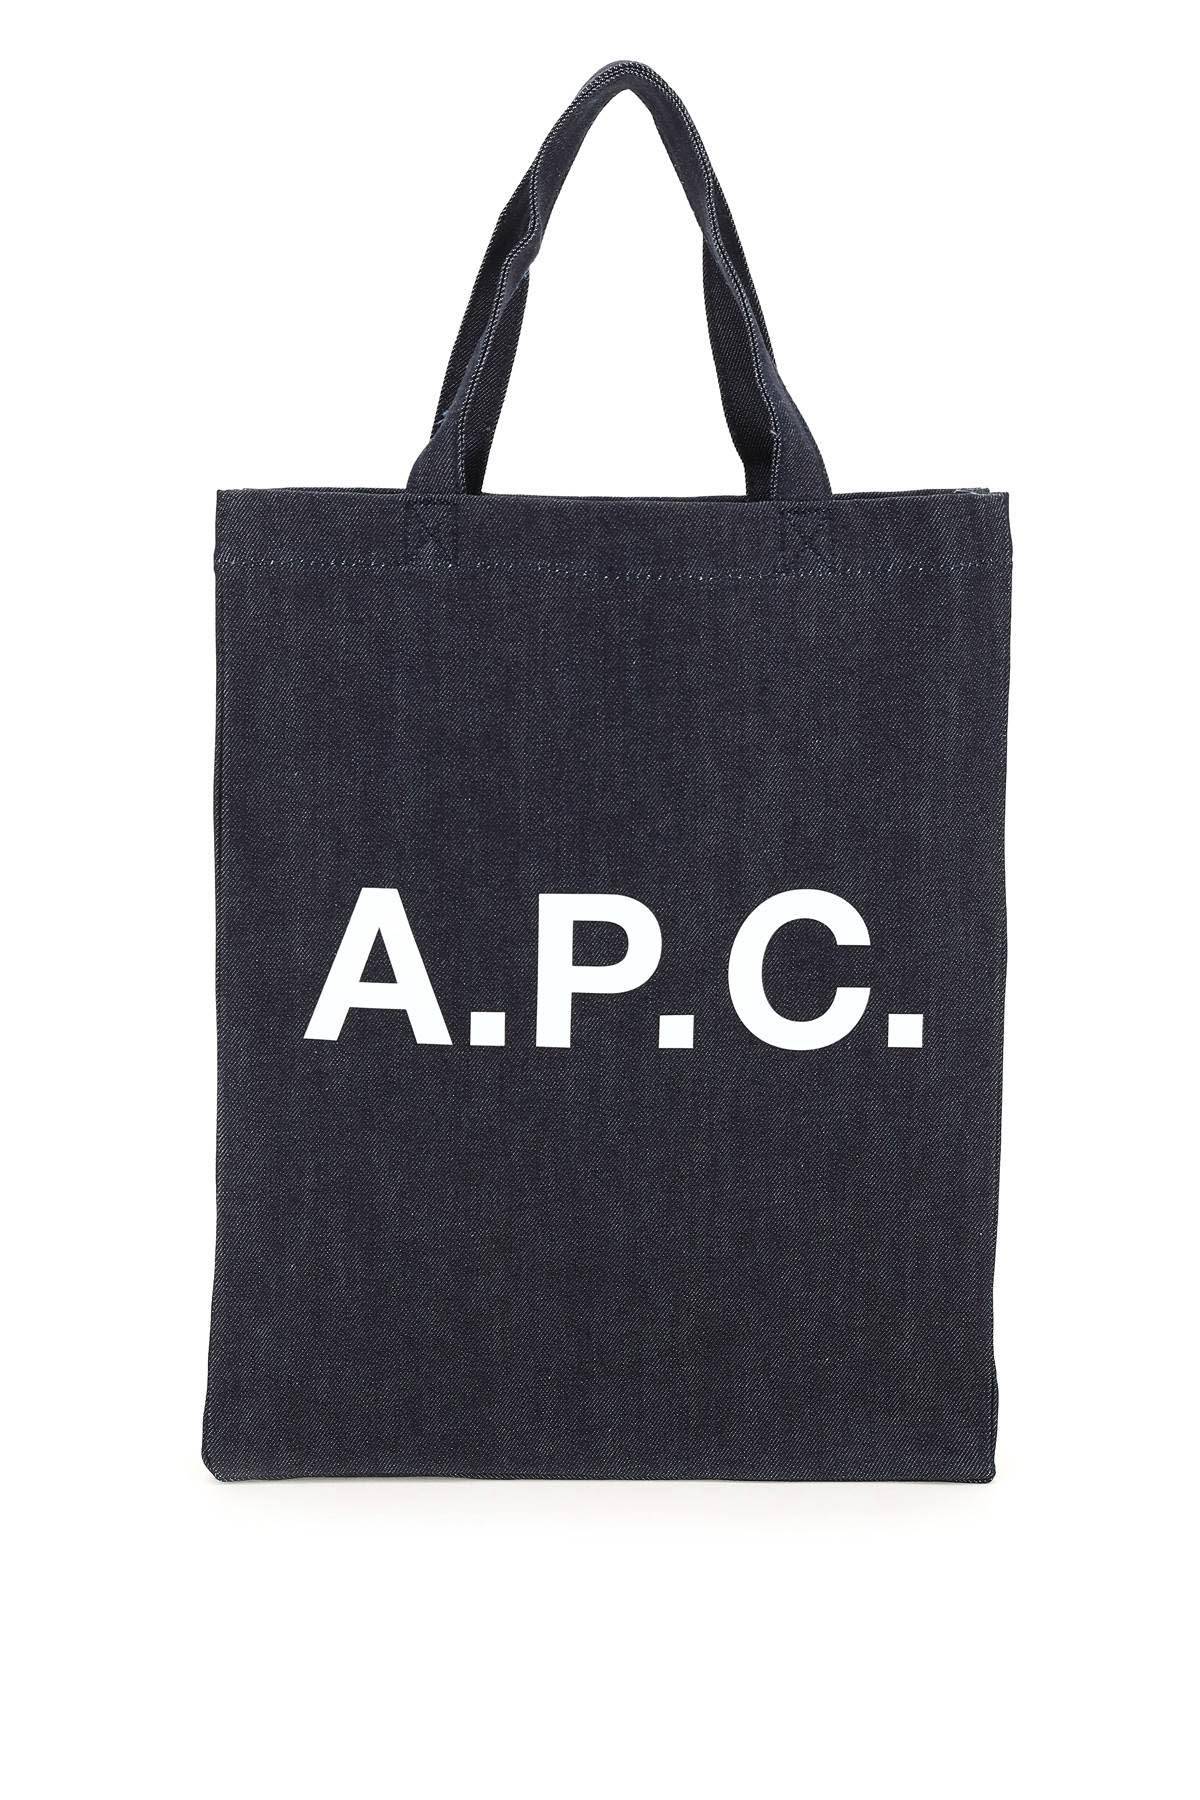 A.P.C. A. P.C. laure tote bag